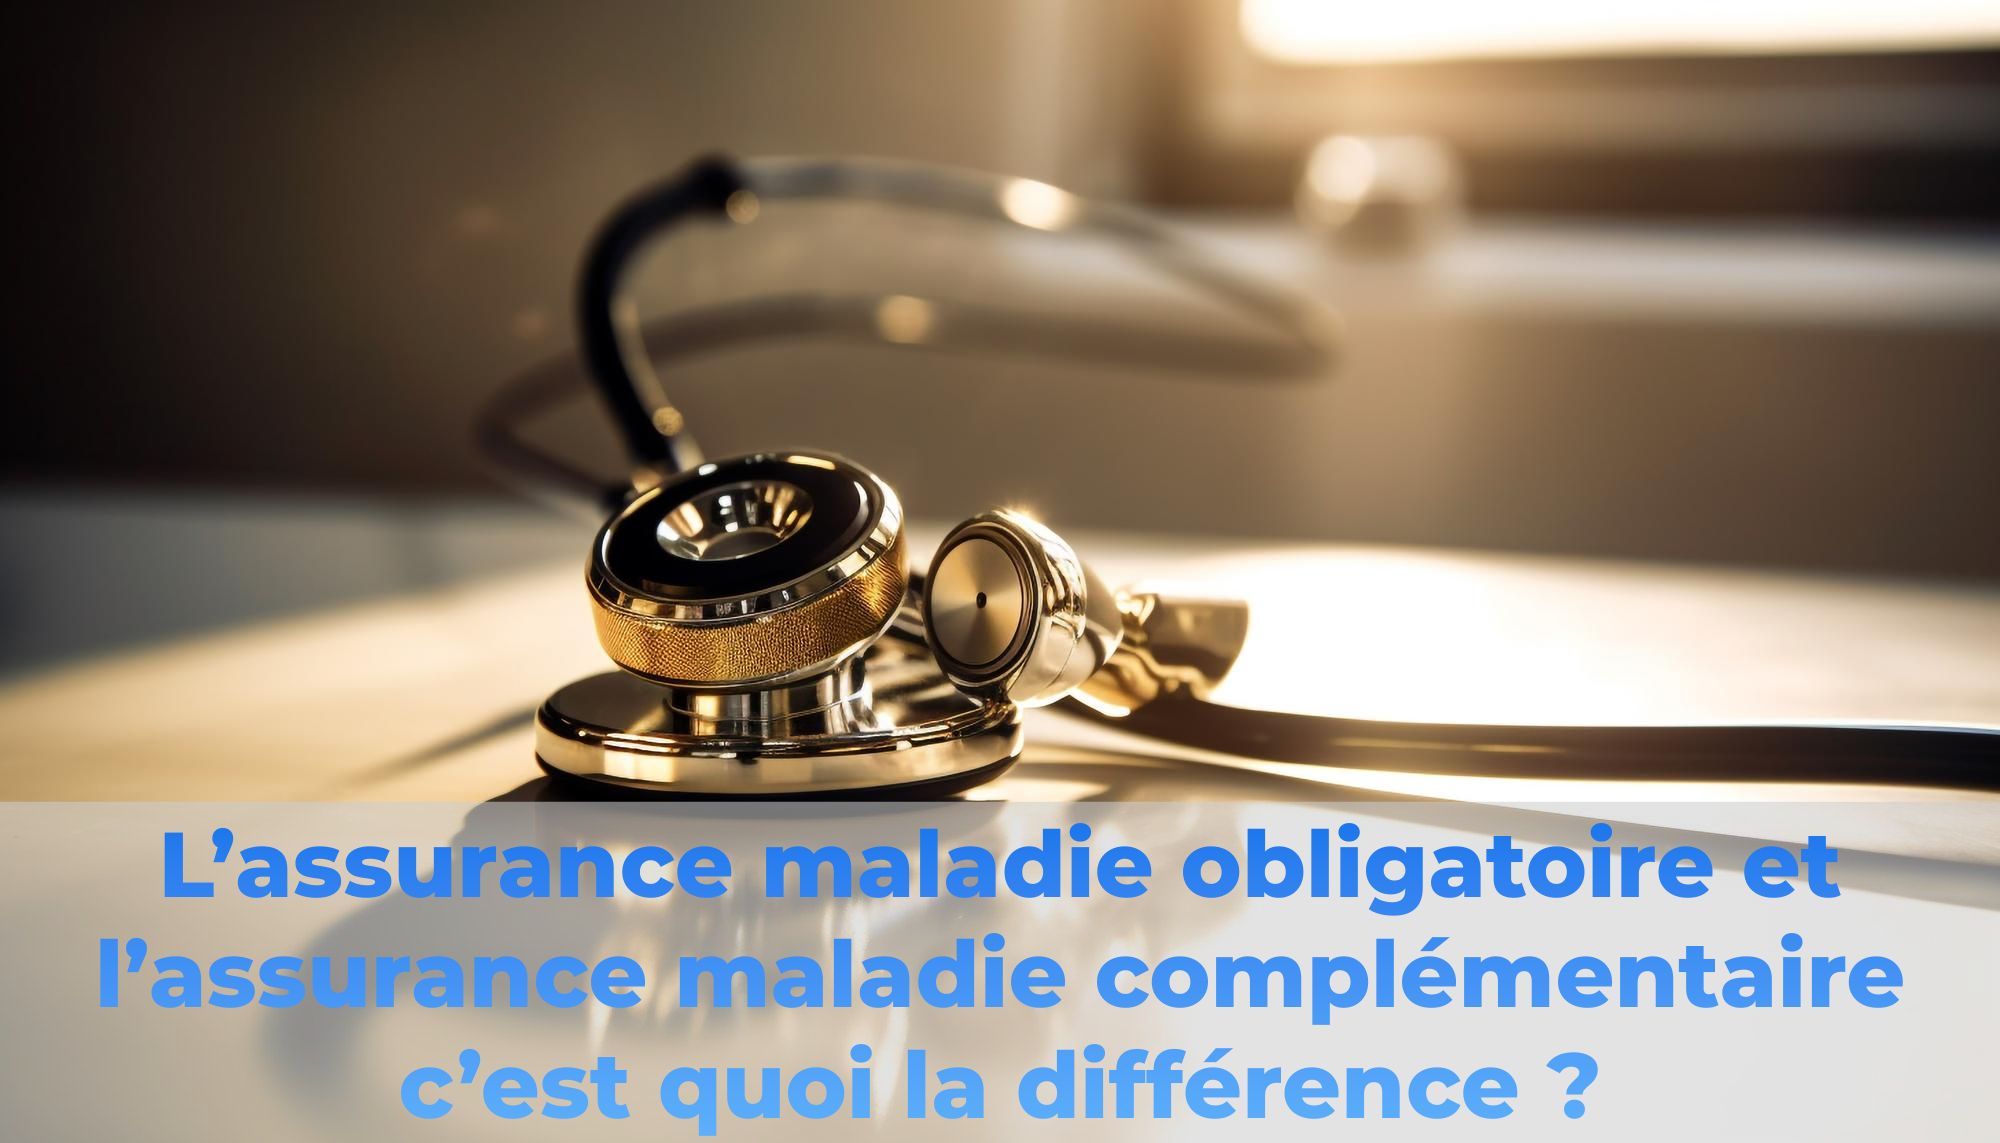 L'assurance maladie obligatoire et l'assurance maladie complémentaire c'est quoi la différence